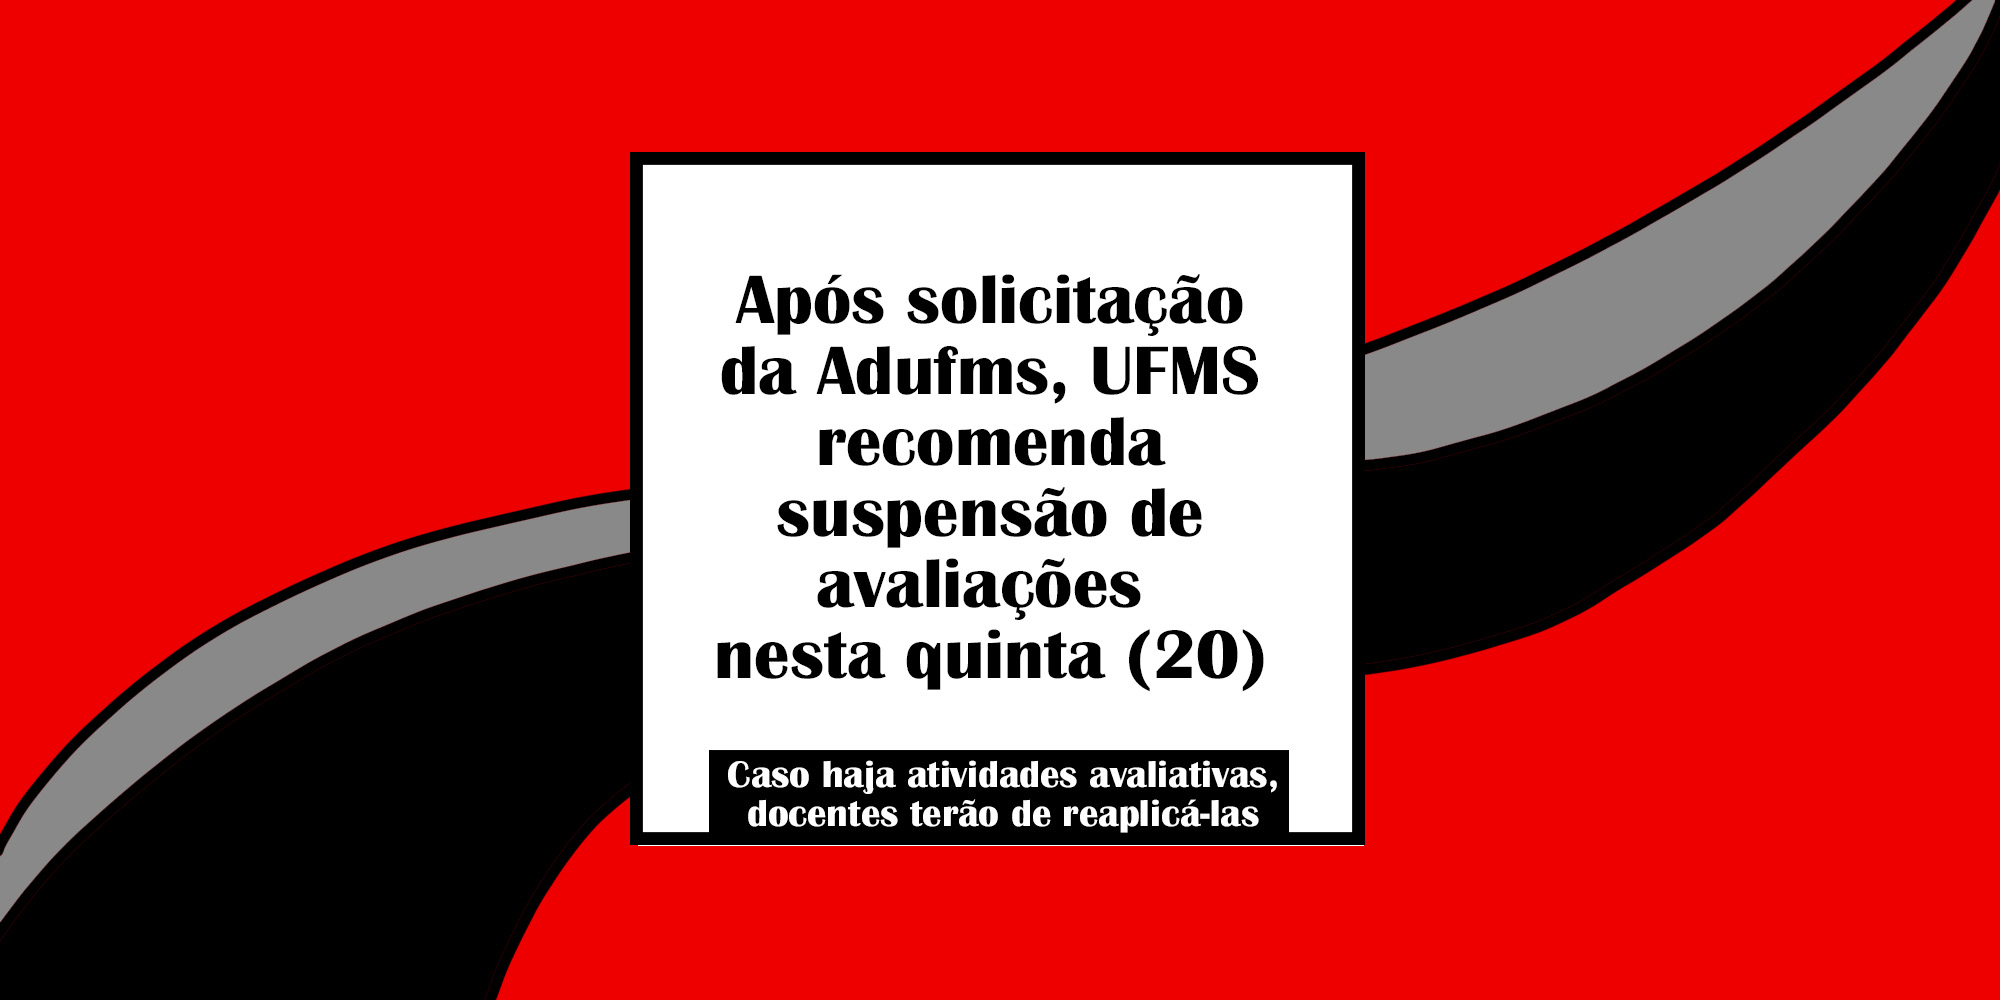 Após solicitação da Adufms, UFMS recomenda suspensão de avaliações nesta quinta (20)